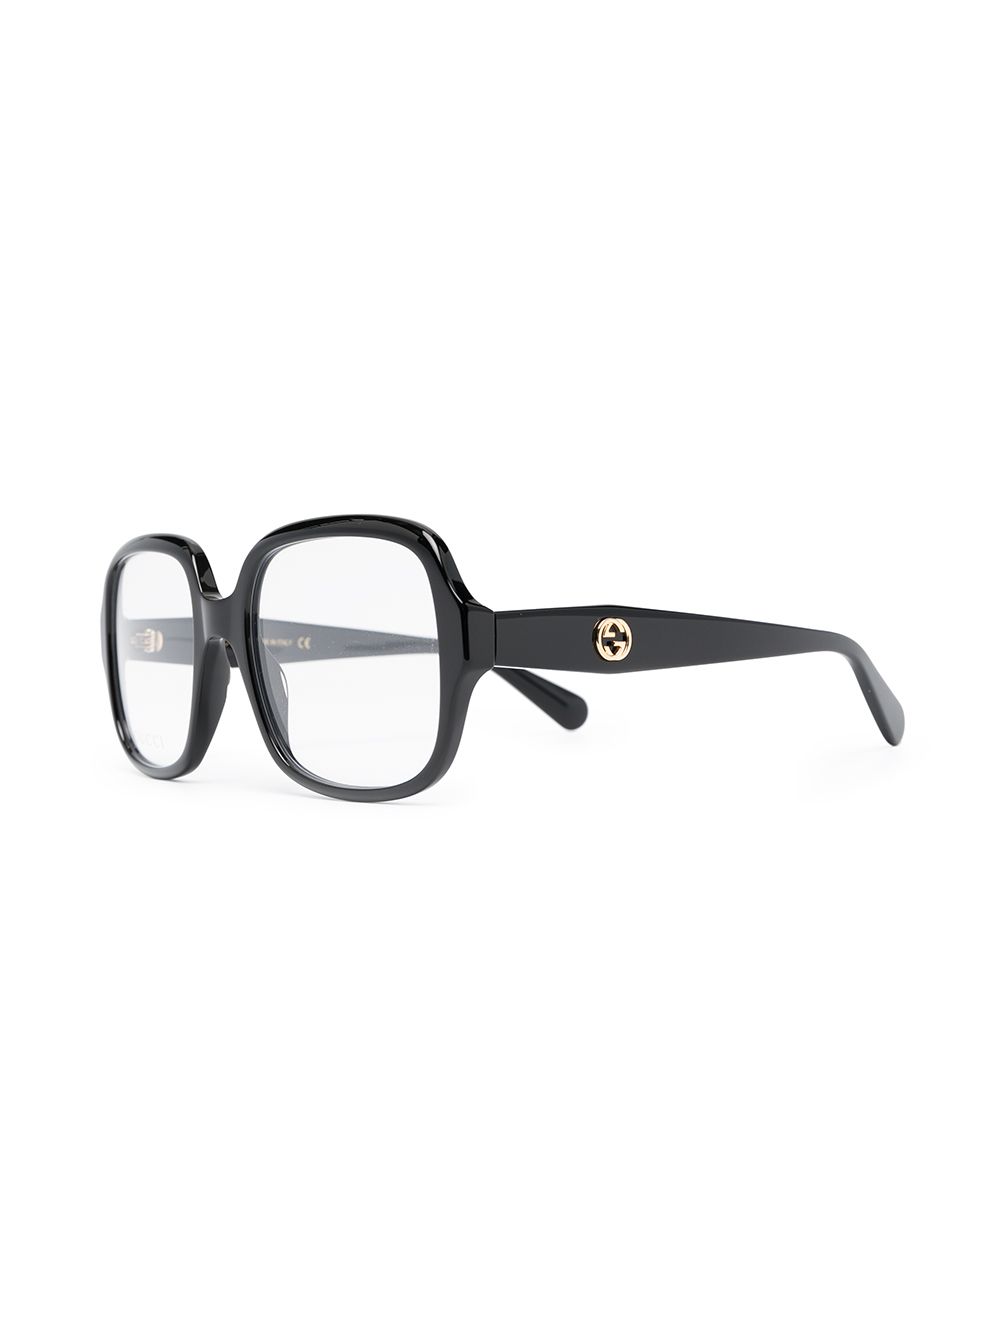 gucci square frame glasses